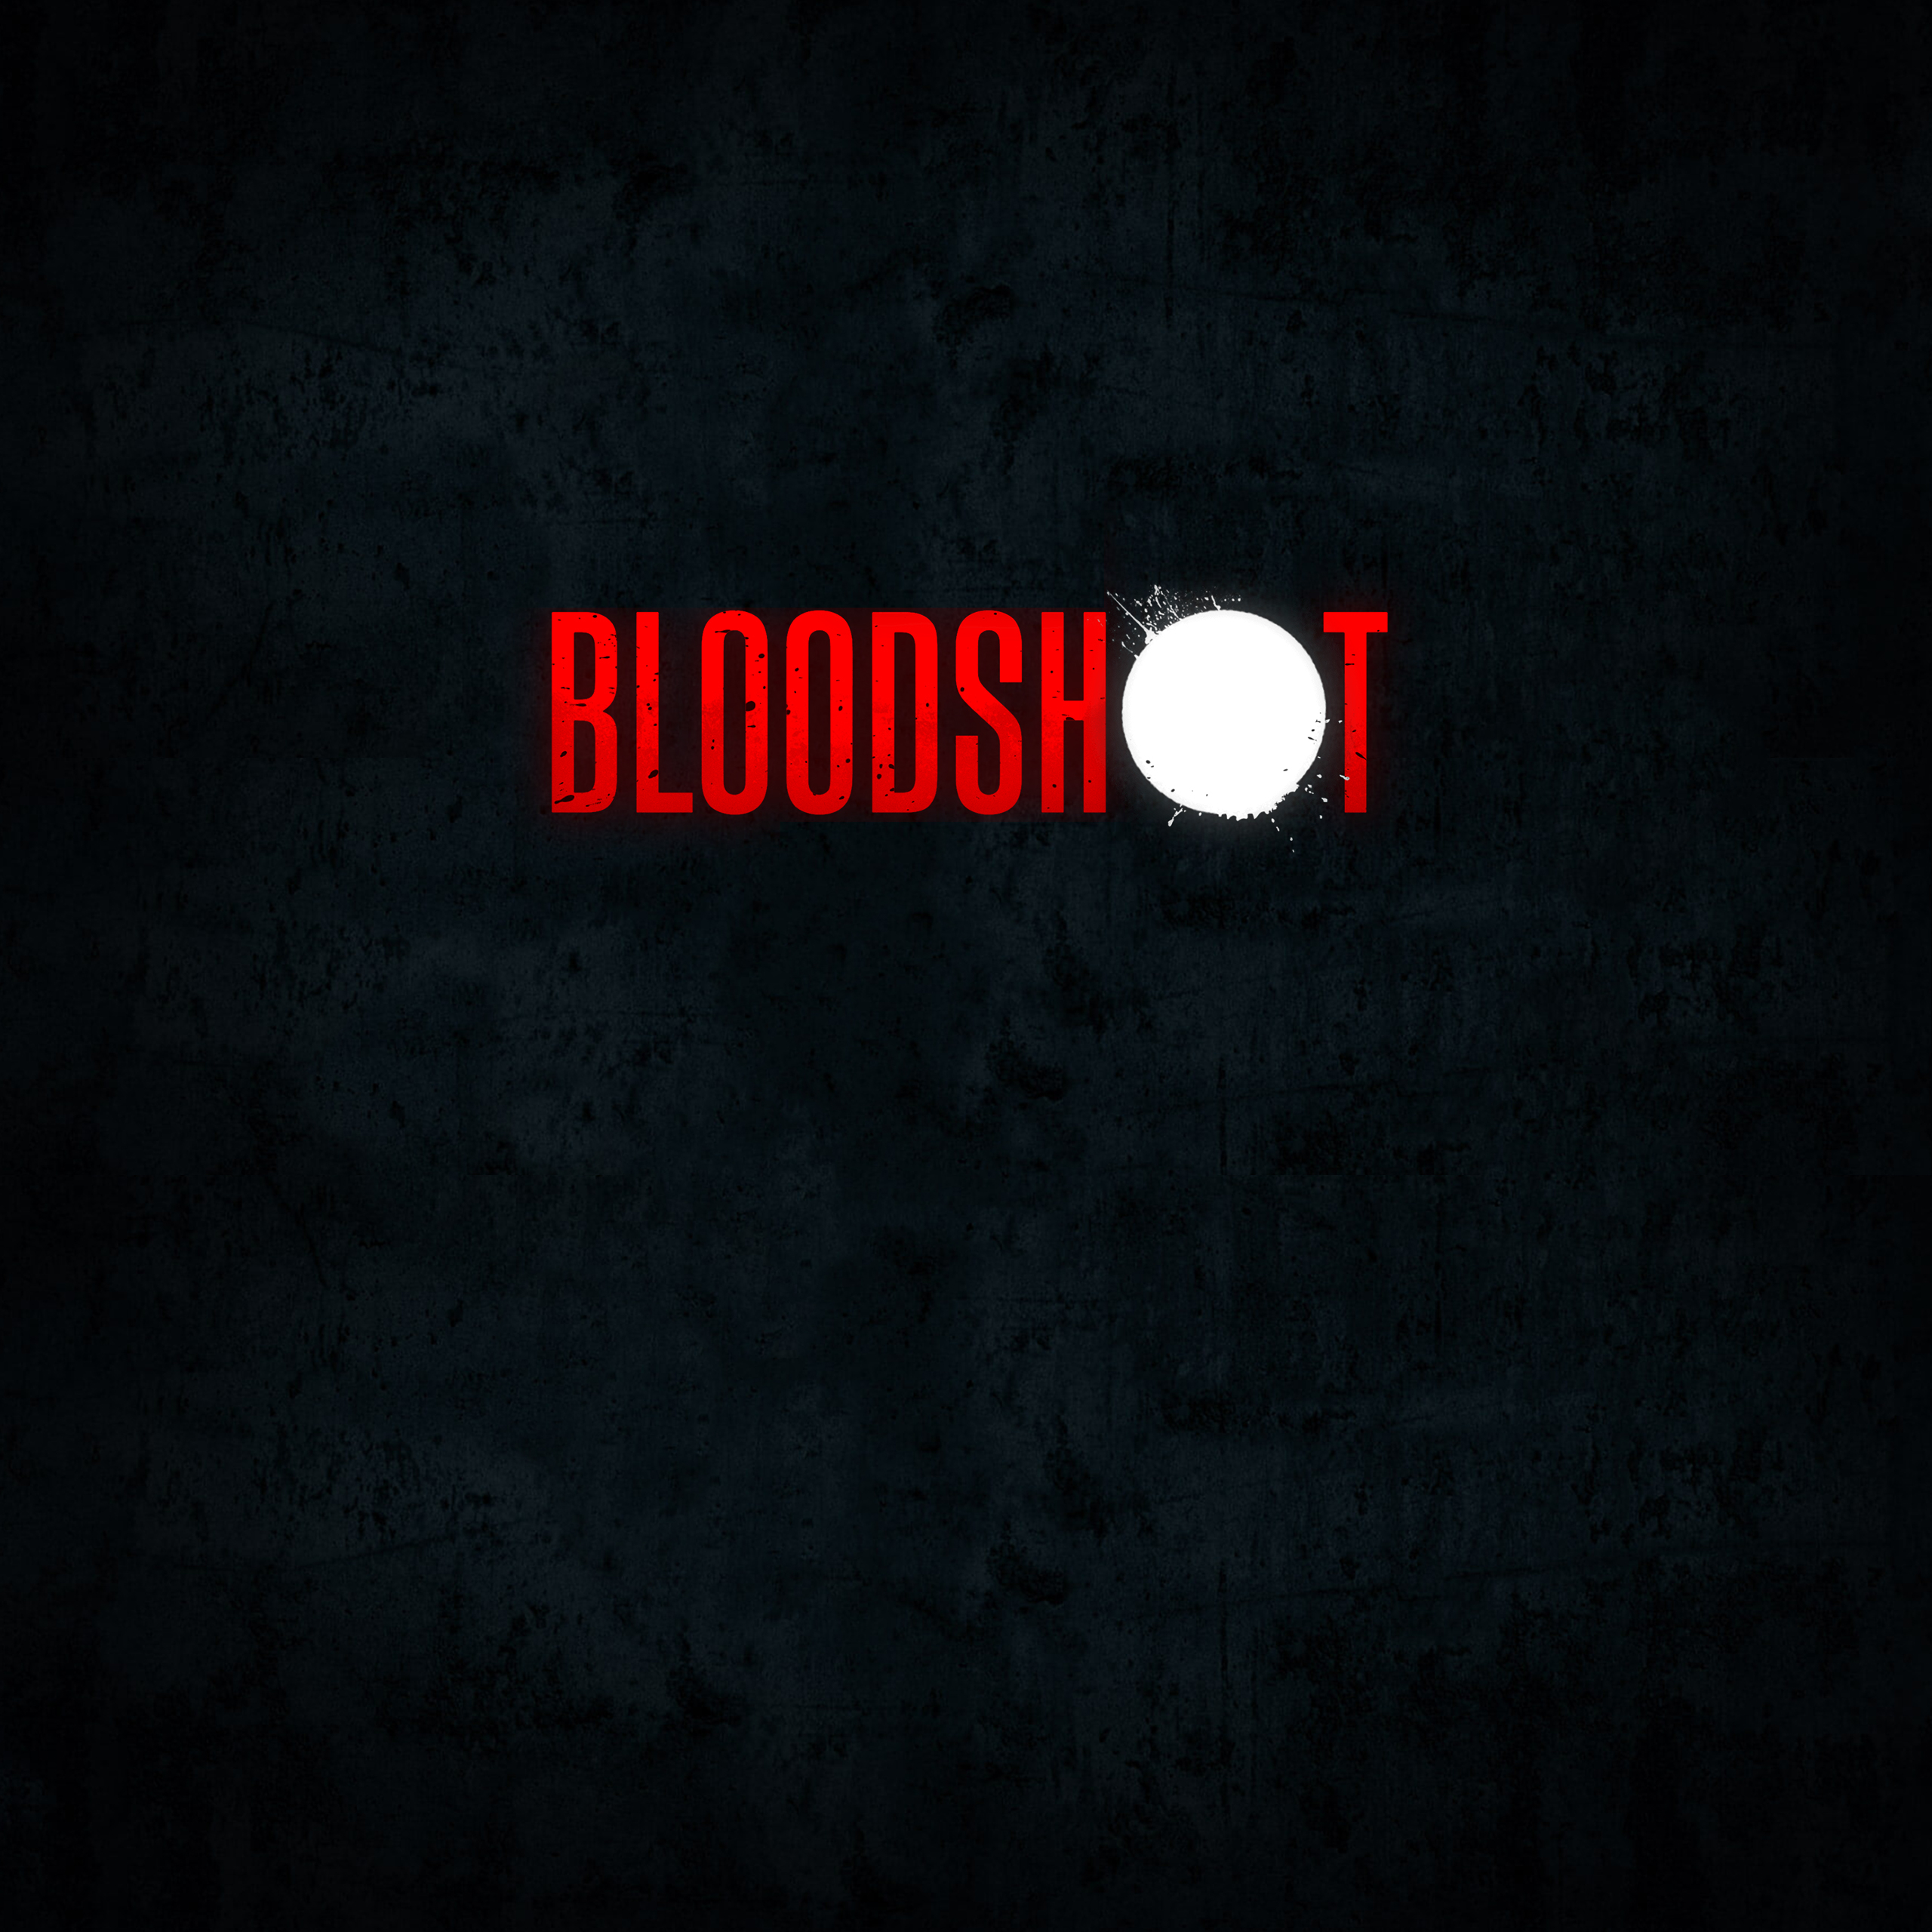 Bloodshot Art 5K Wallpapers